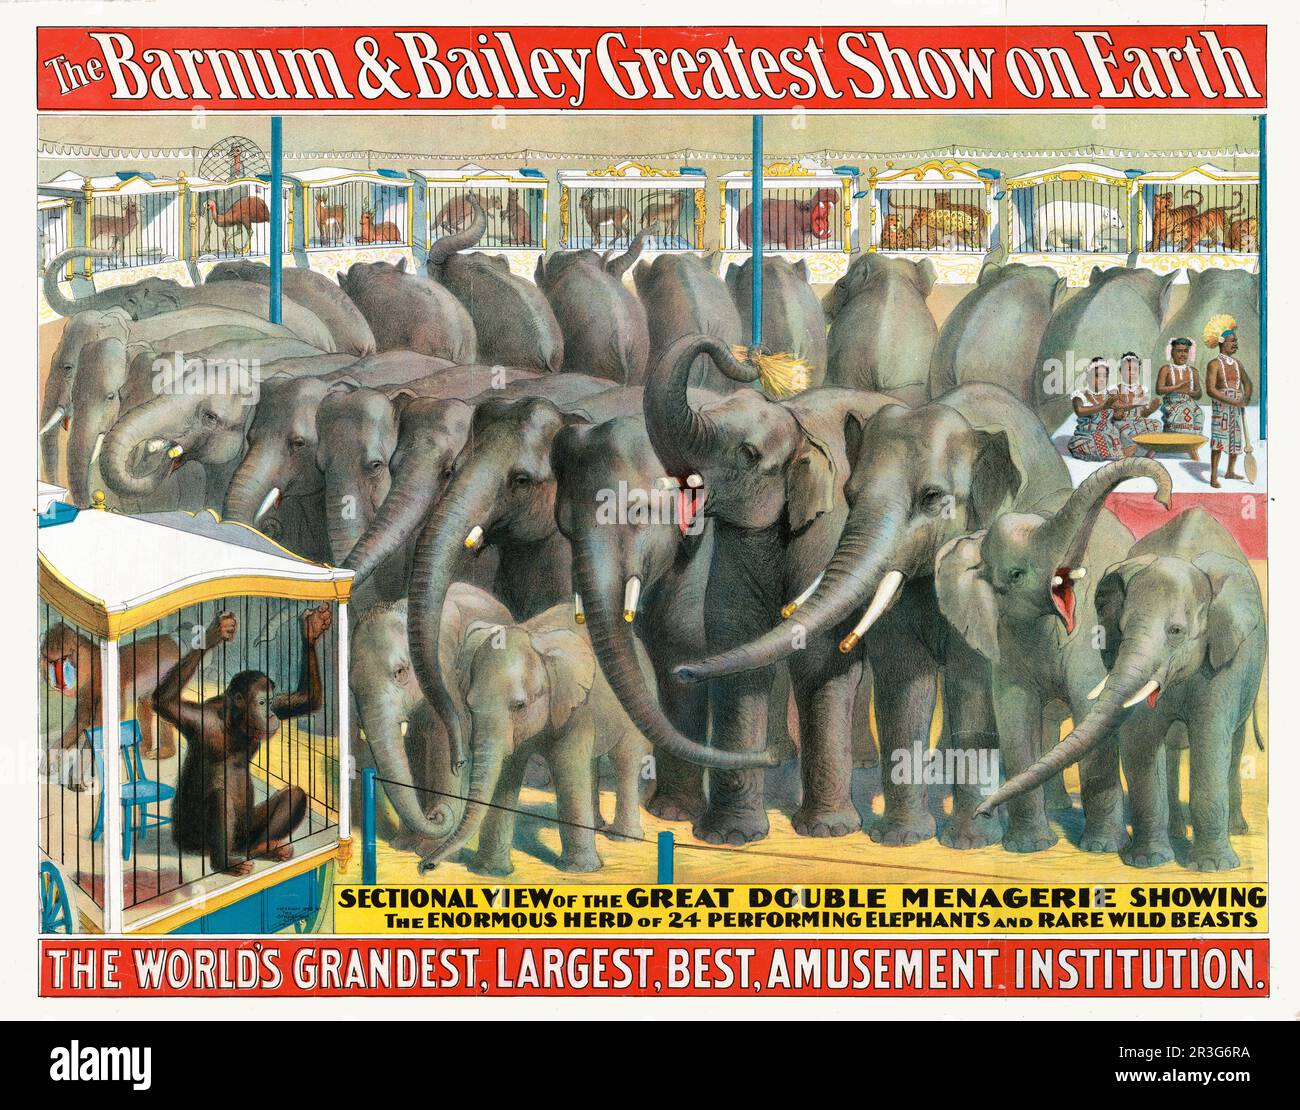 Affiche de cirque Barnum & Bailey d'époque montrant des éléphants et des animaux dans des cages, vers 1895. Banque D'Images